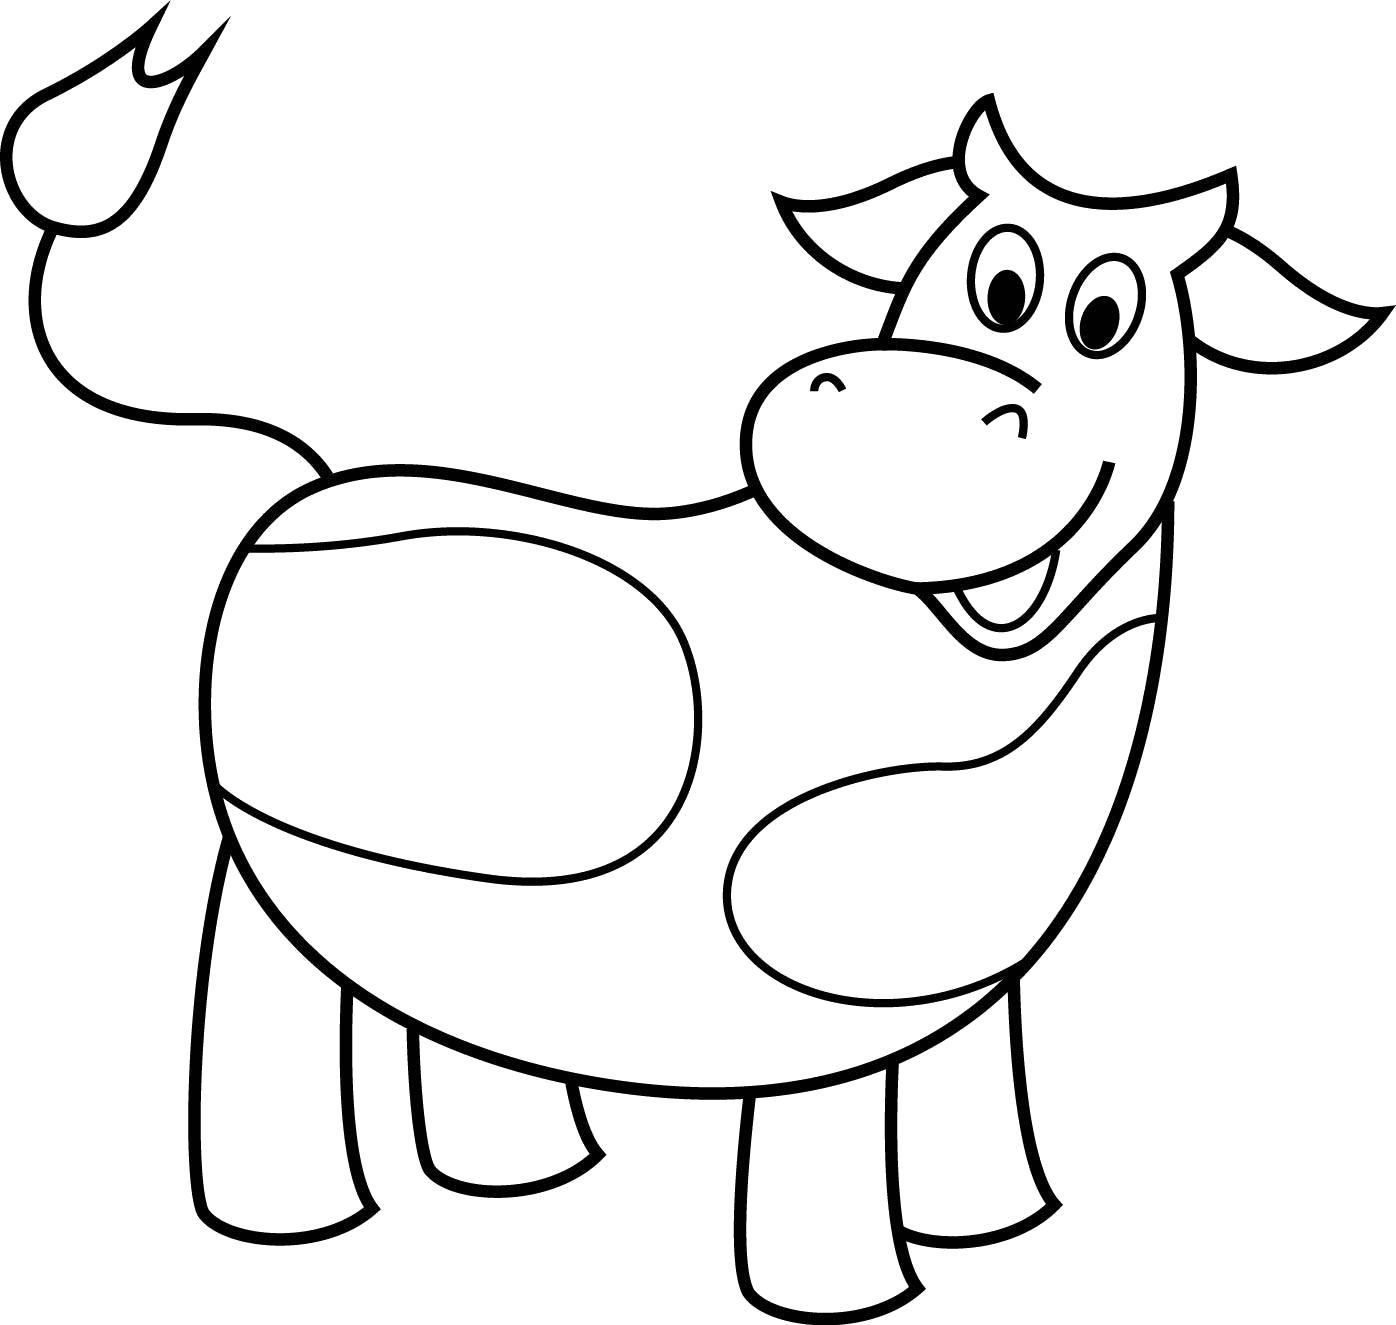 Раскраска Пятнистая коровка. Домашние животные